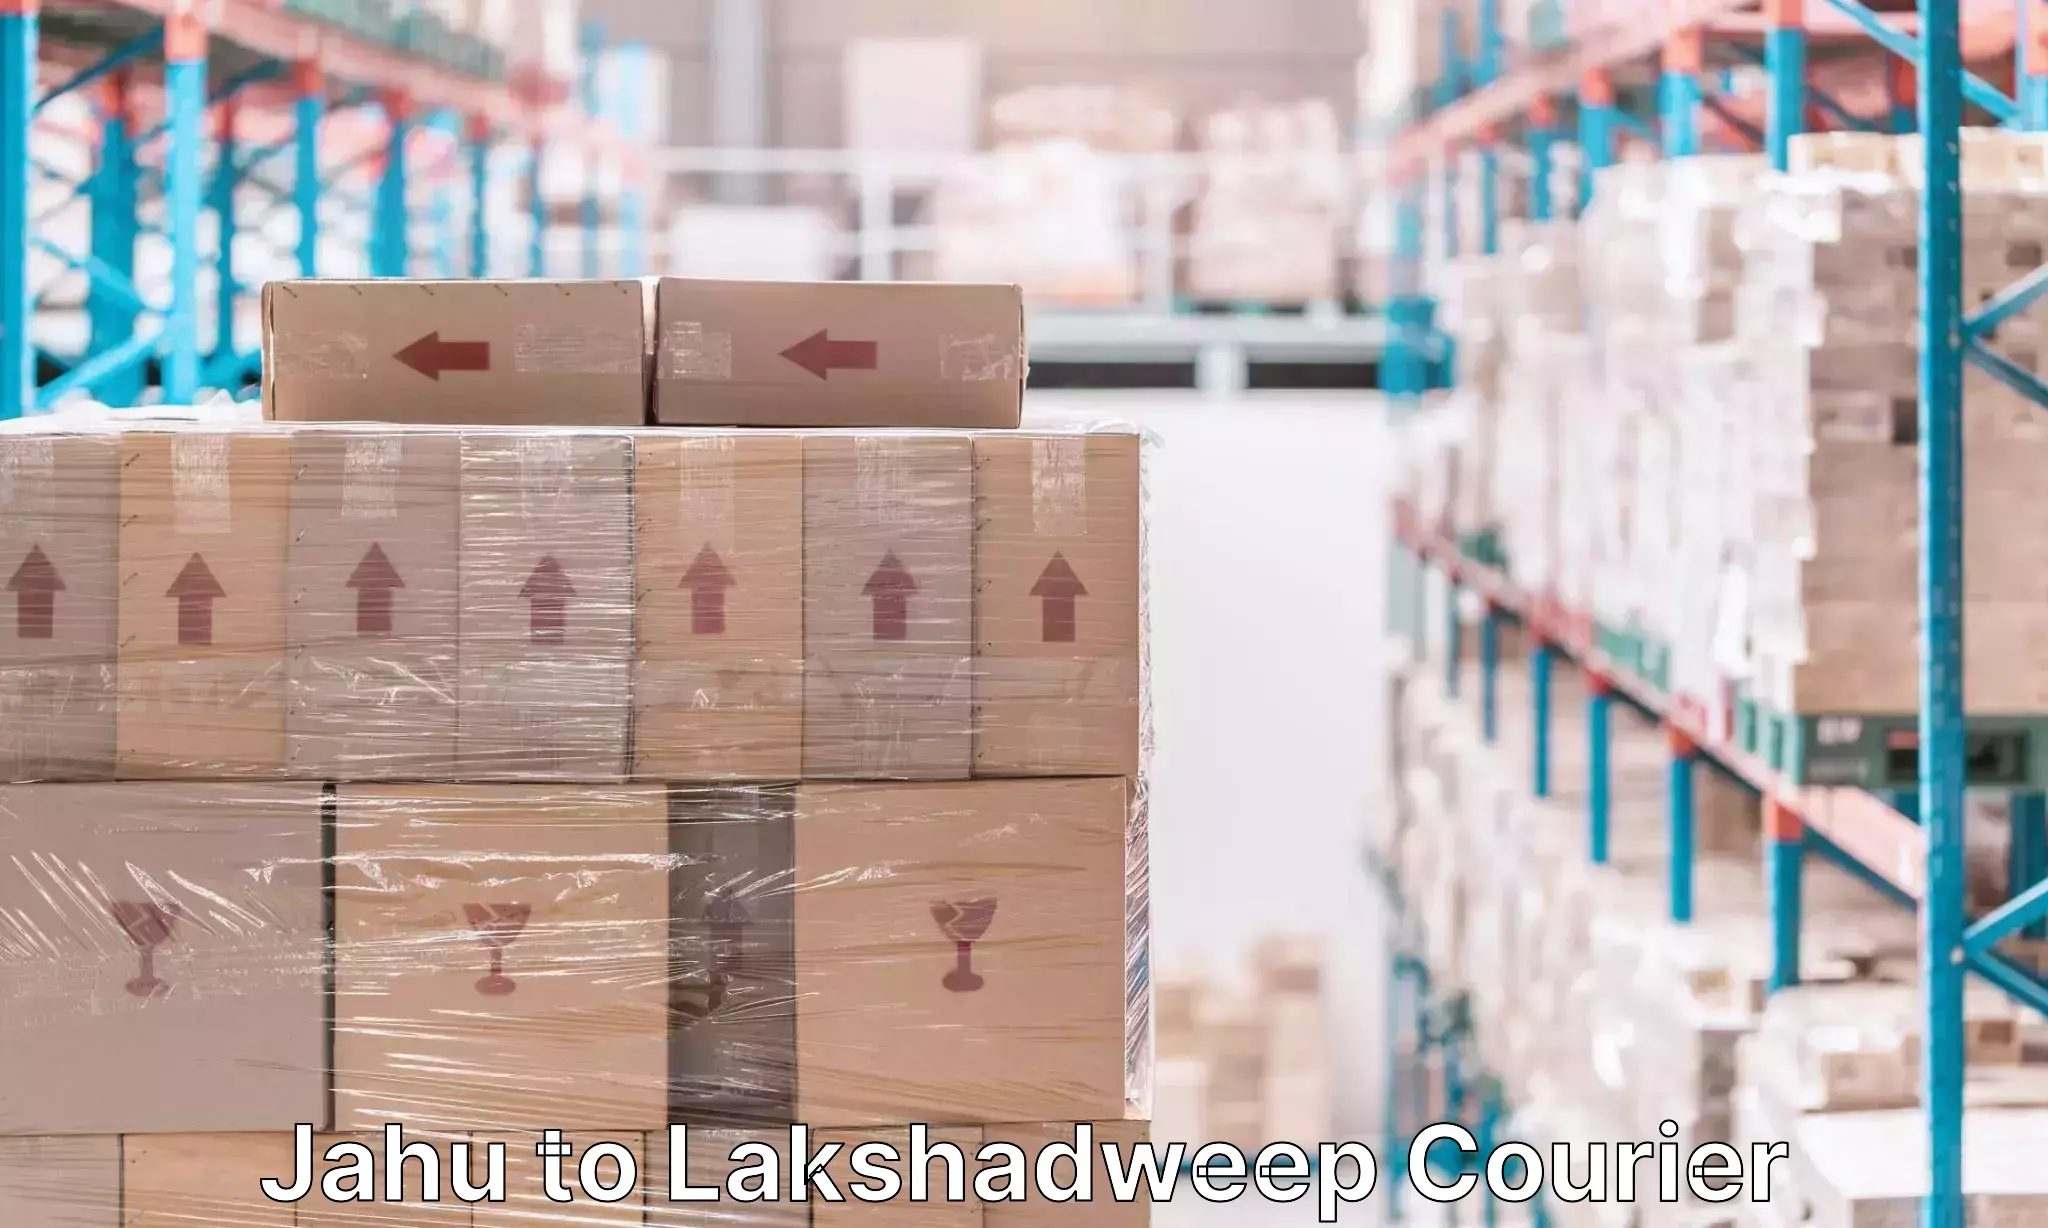 Luggage delivery app Jahu to Lakshadweep